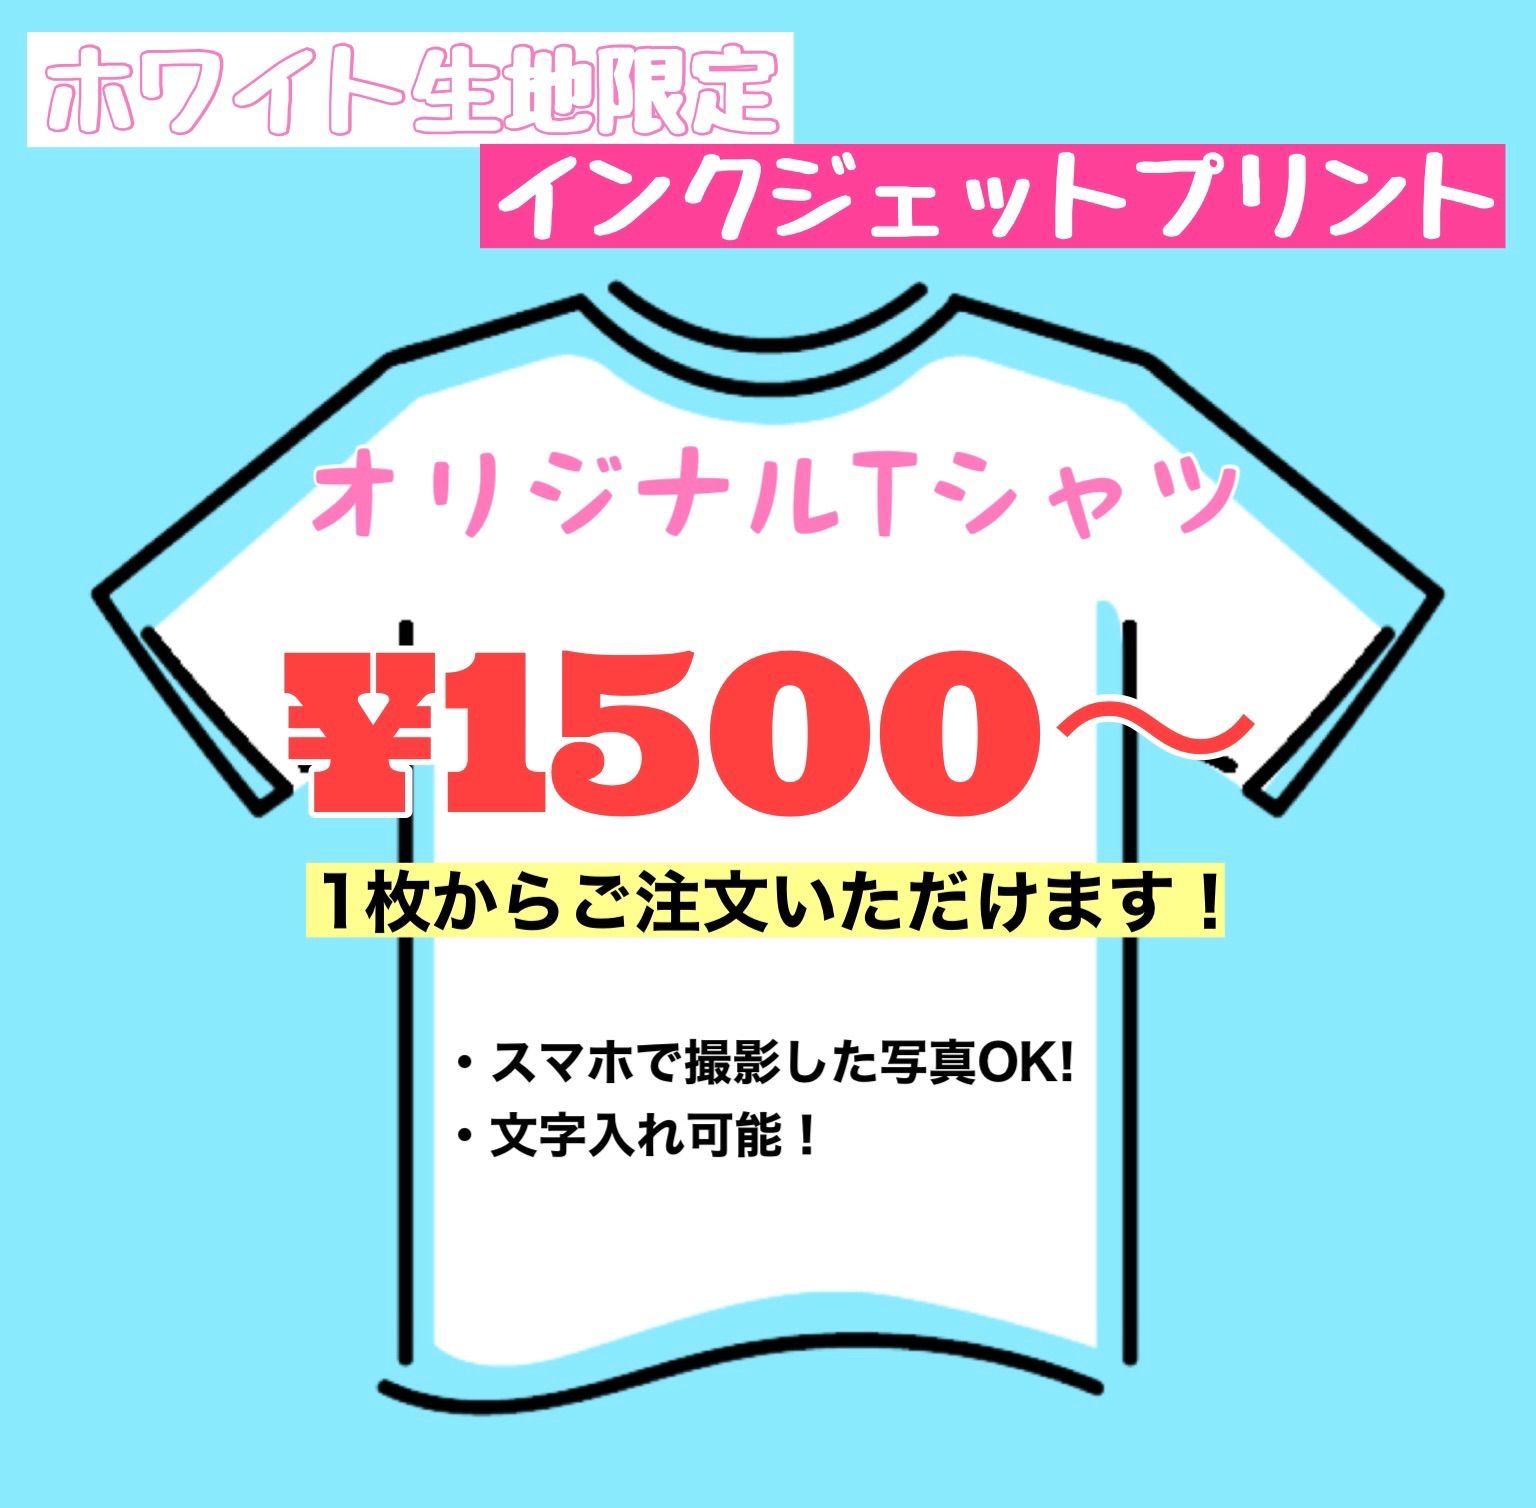 【コミコミ価格】オリジナルTシャツ作成【PassionMake】